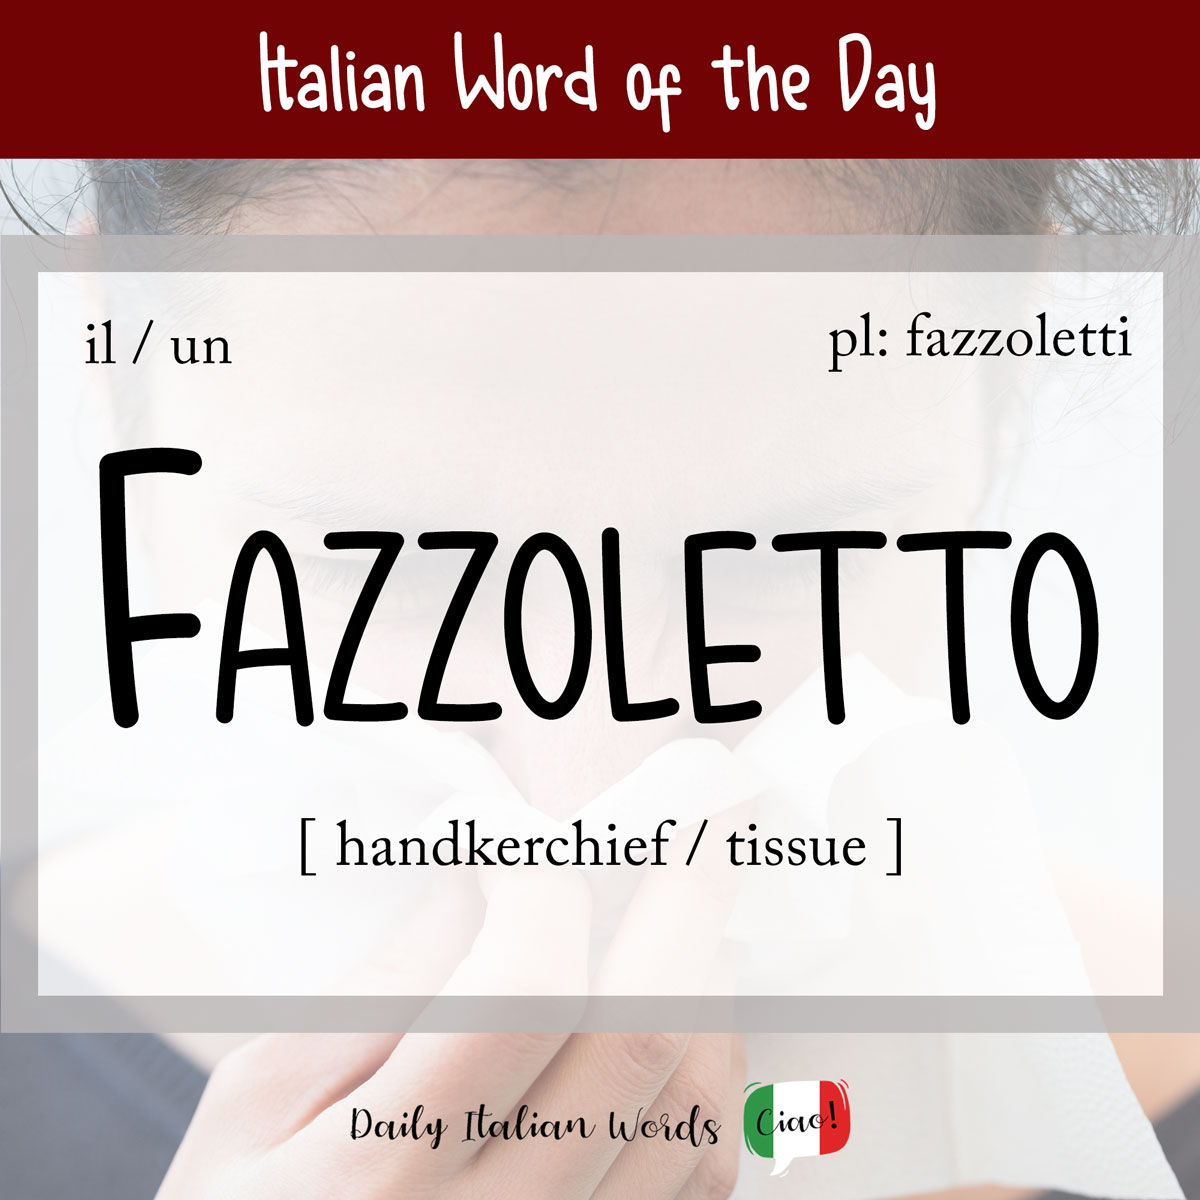 Italian word "fazzoletto"